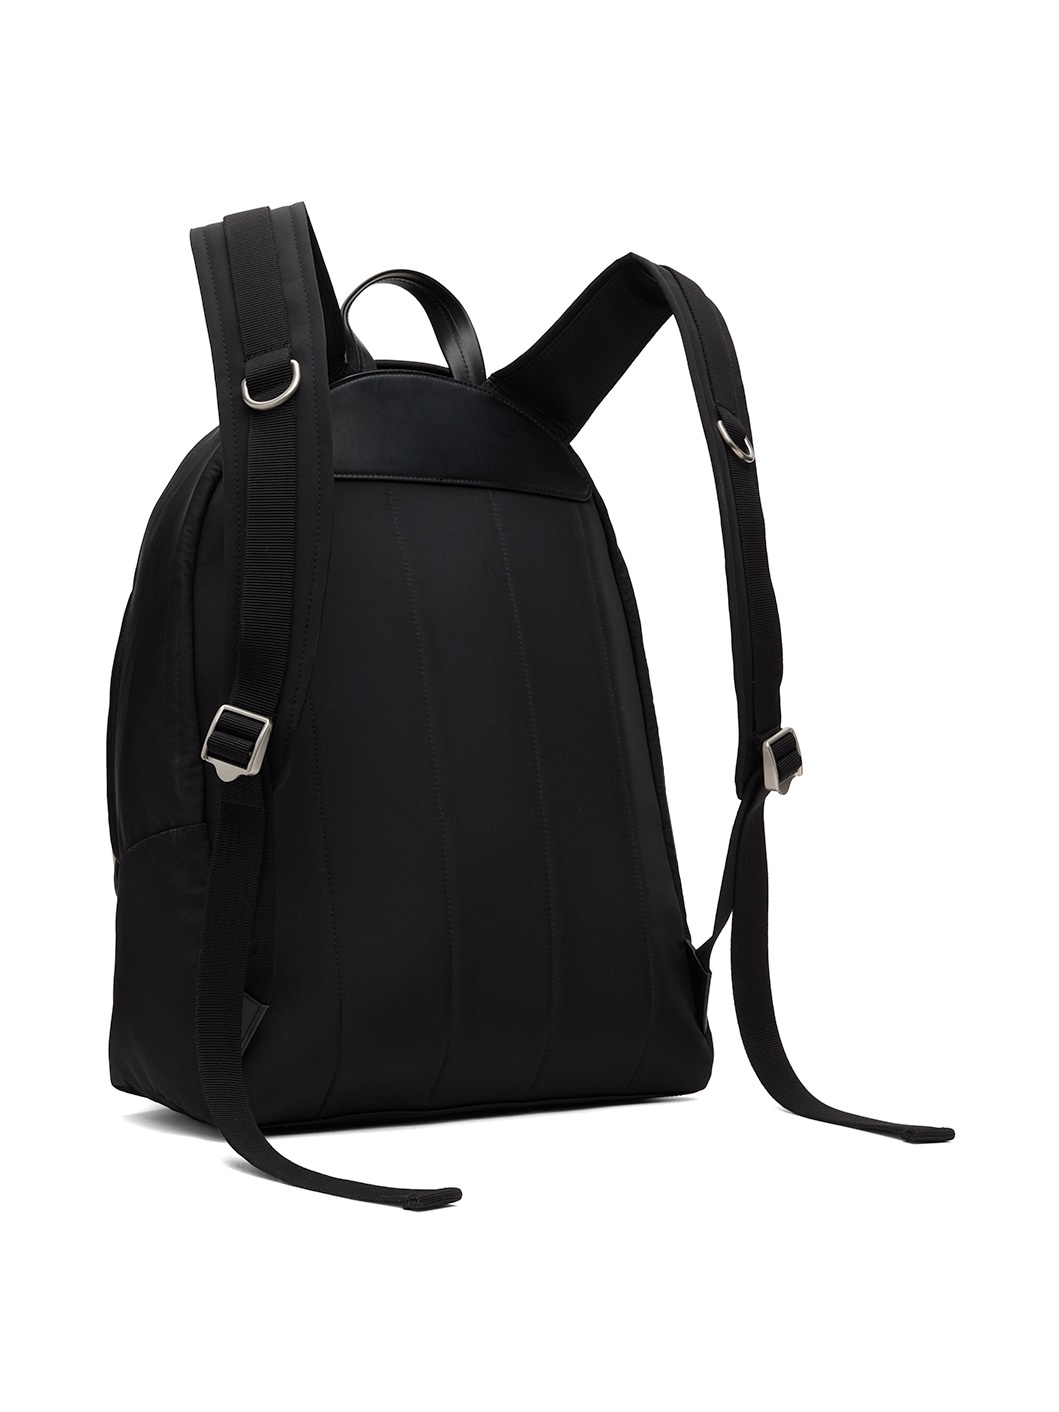 Black Lid Backpack - 3